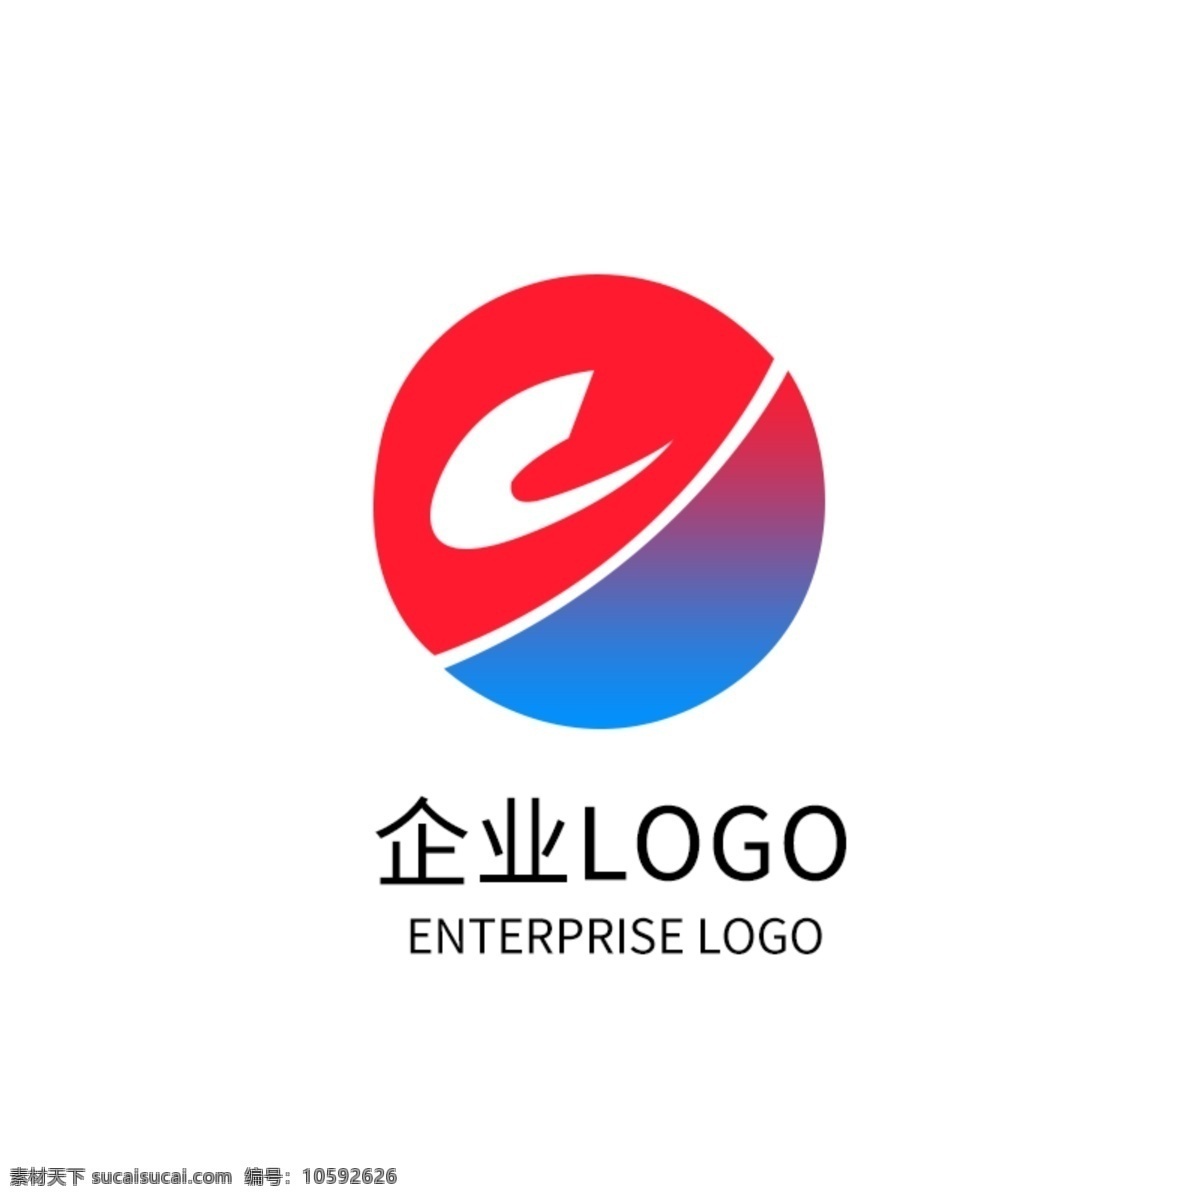 蓝色 渐变 圆形 科技 公司 logo 企业 标志设计 红色 logo设计 企业标志设计 星际